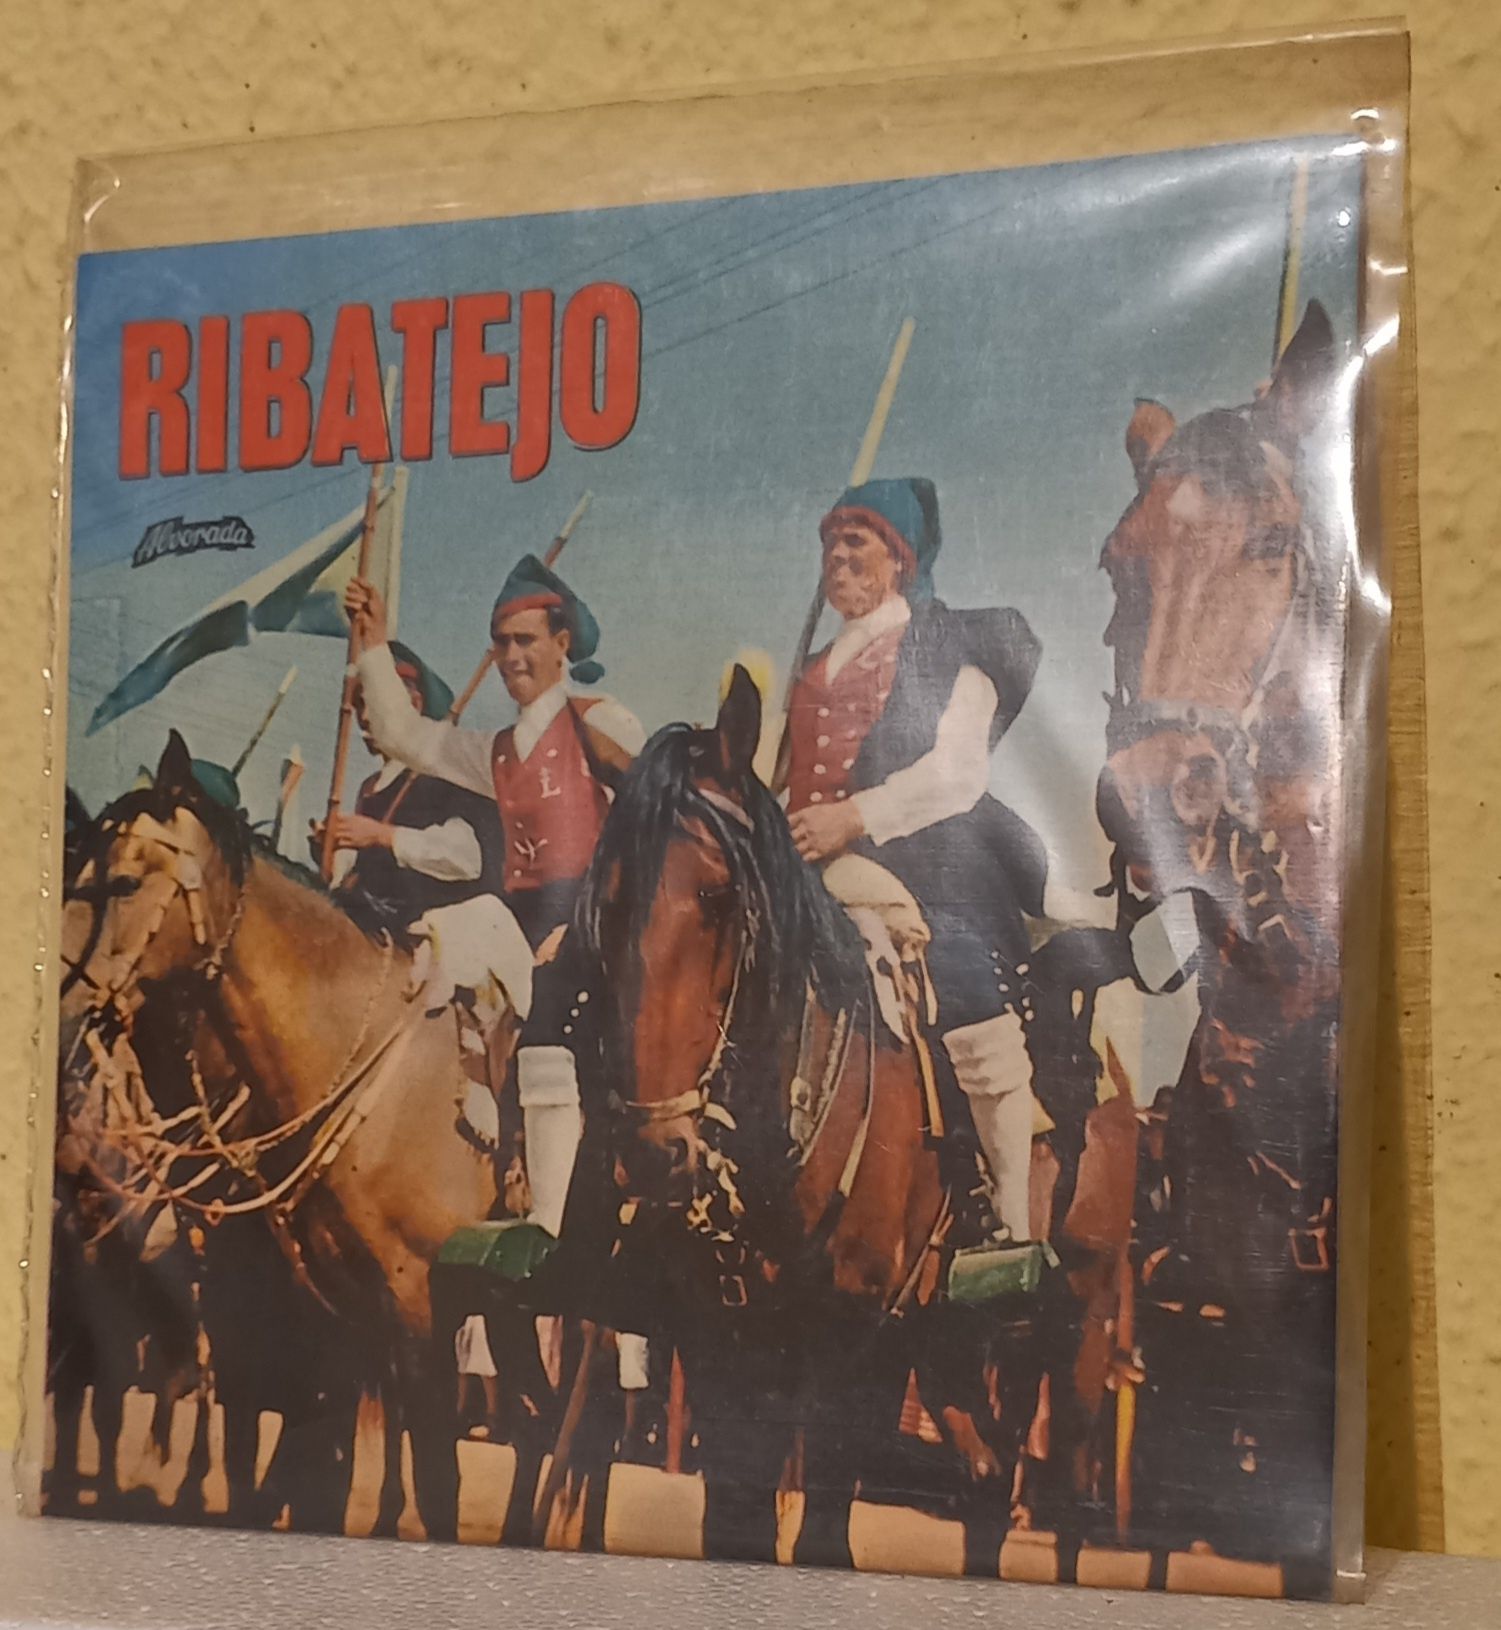 Disco de vinil single, Ribatejo, por Joaquim Luis Gomes